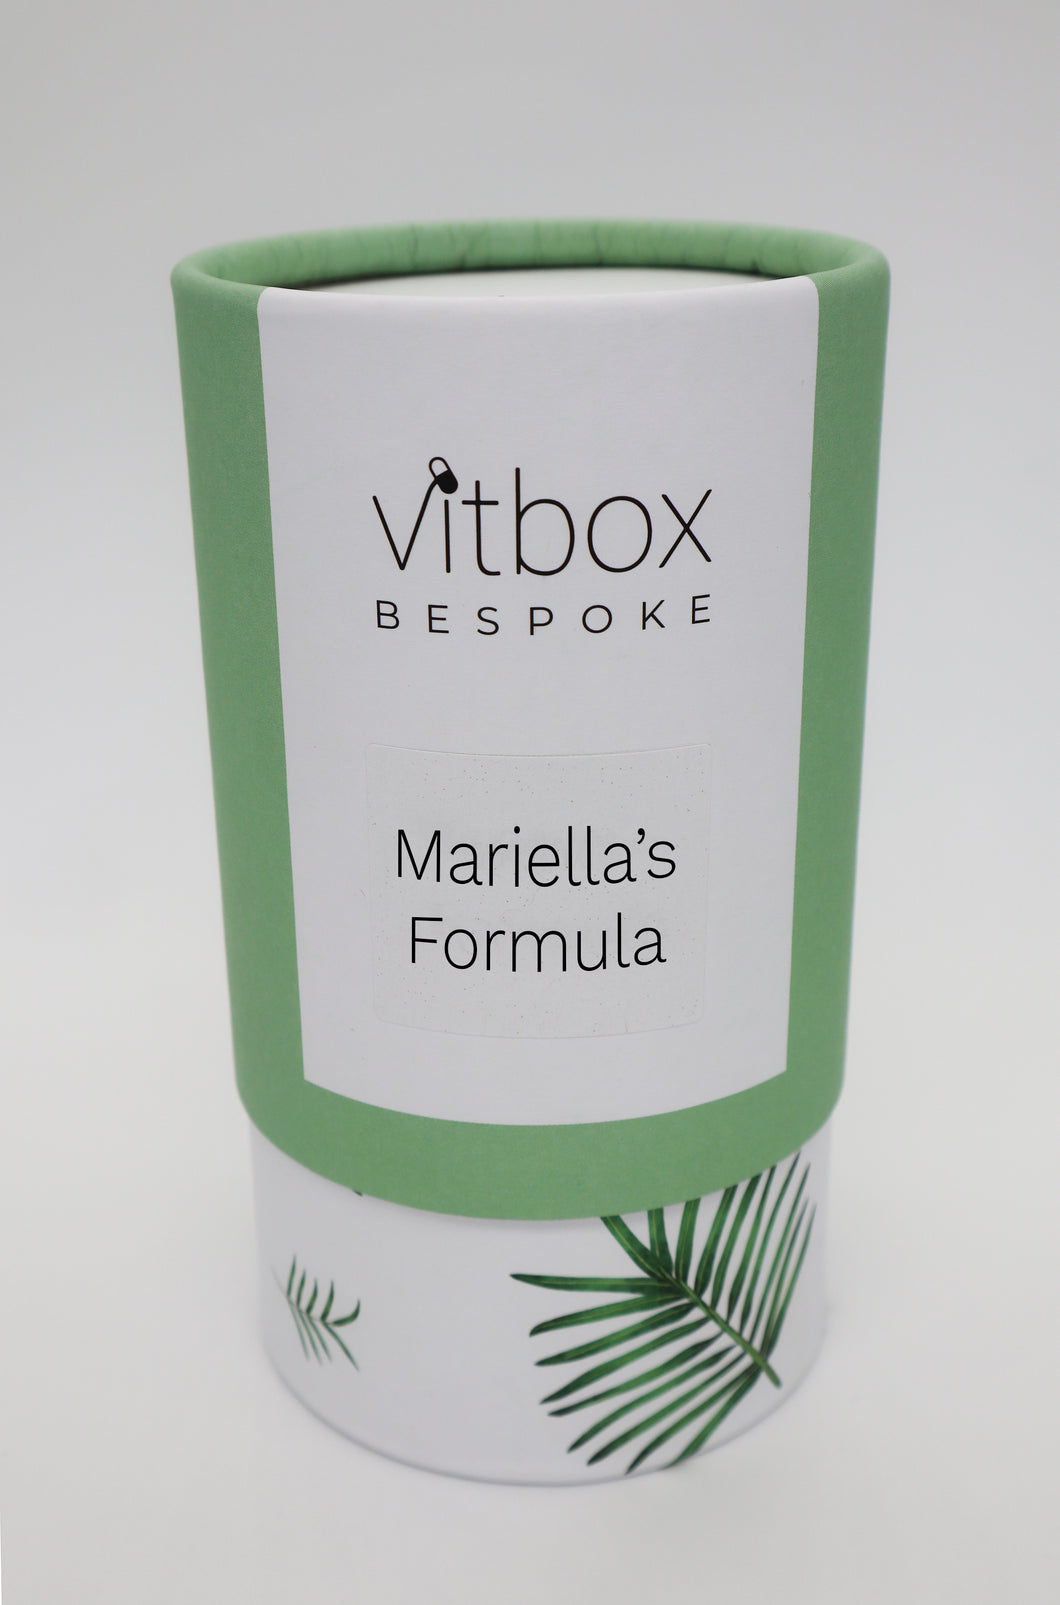 Mariella's Vitbox Bespoke